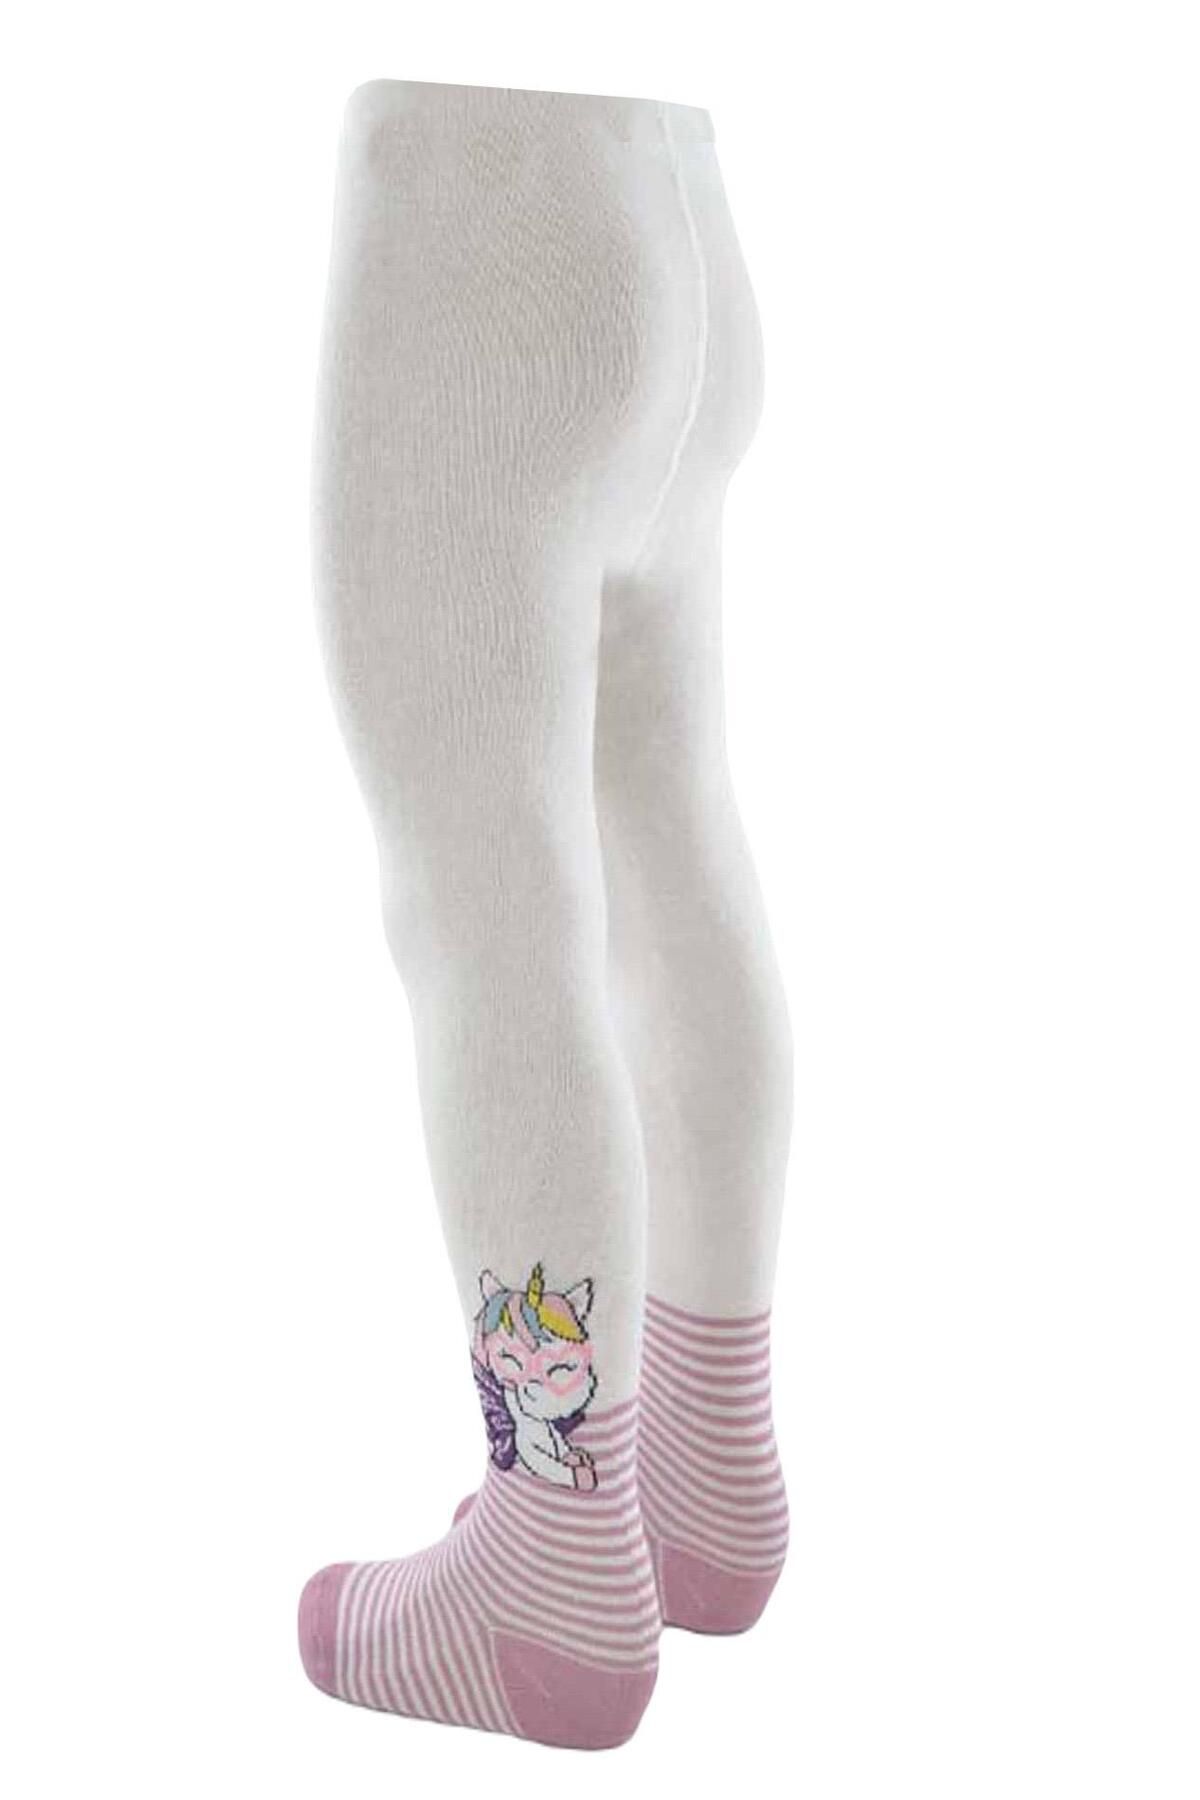 Ekinoks Kız Çocuk Pamuk Unıcorn Desenli Külotlu Çorap